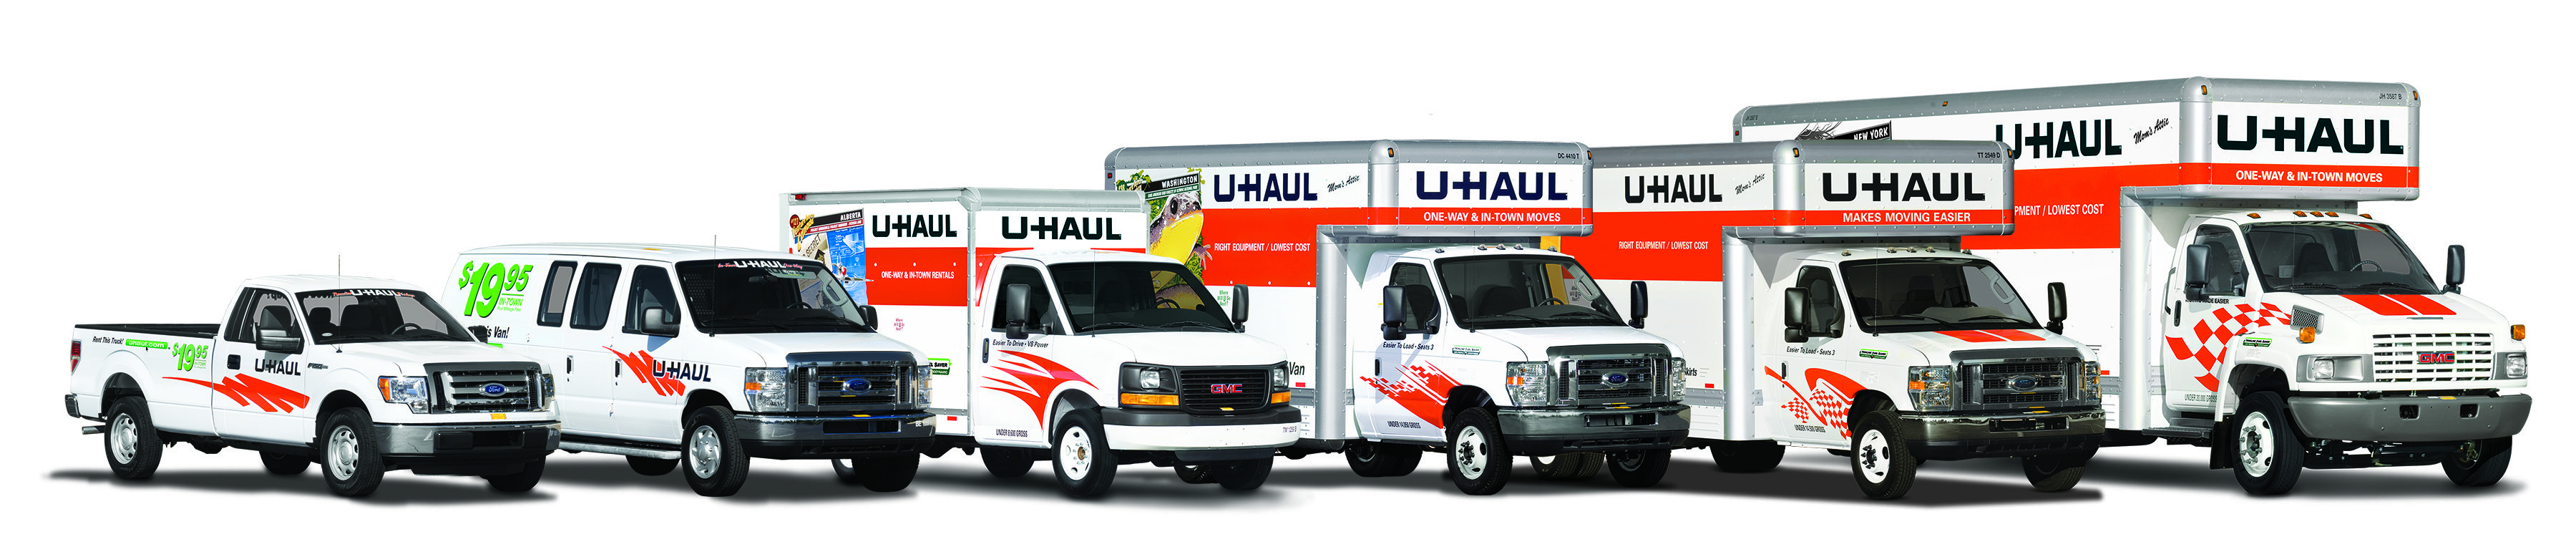 Image of UHaul Trucks lined up